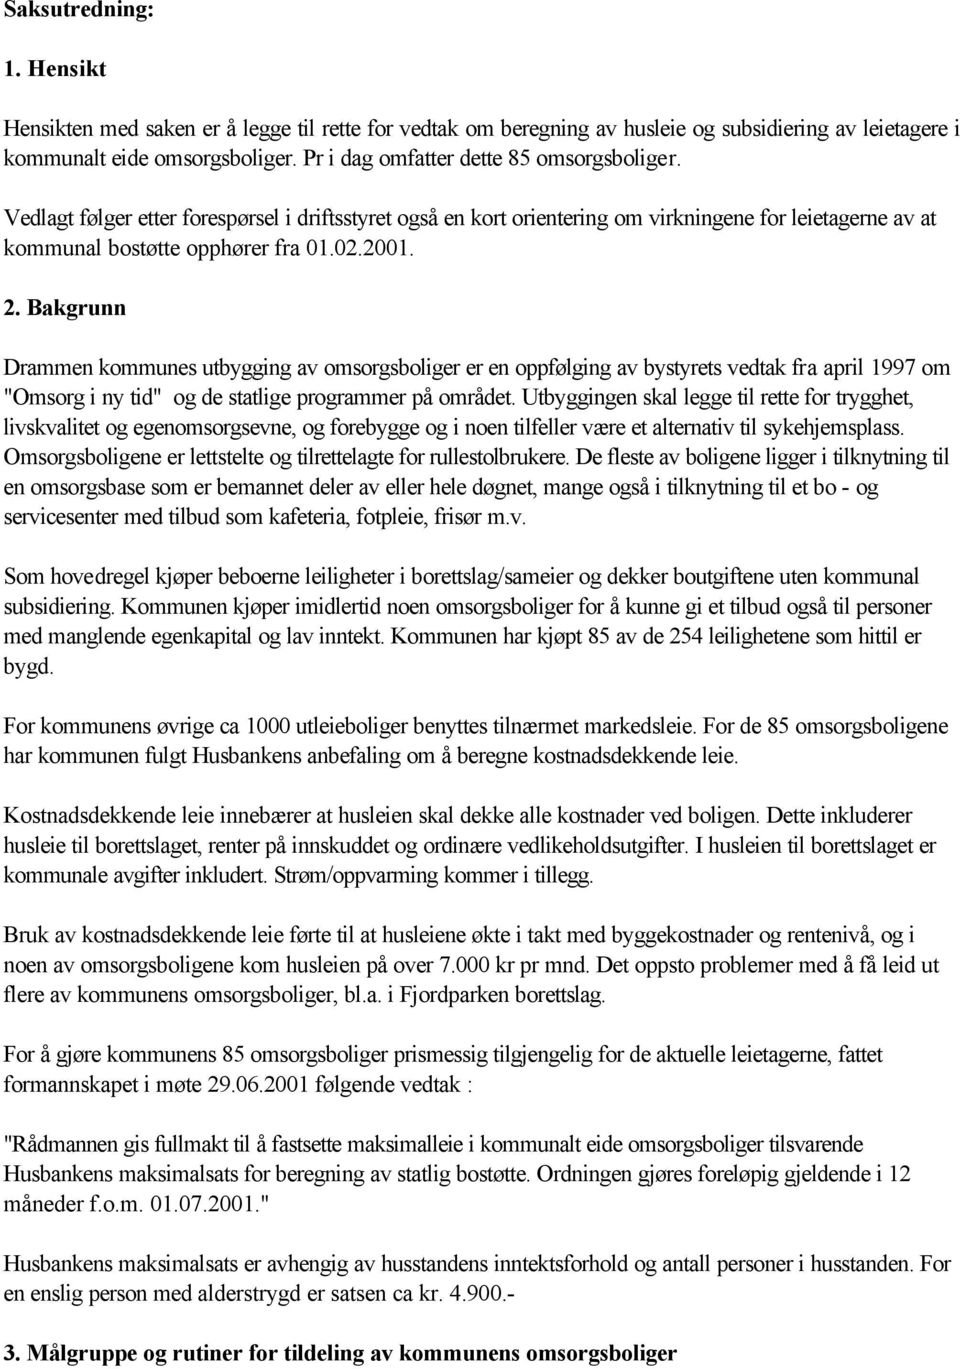 Bakgrunn Drammen kommunes utbygging av omsorgsboliger er en oppfølging av bystyrets vedtak fra april 1997 om "Omsorg i ny tid" og de statlige programmer på området.